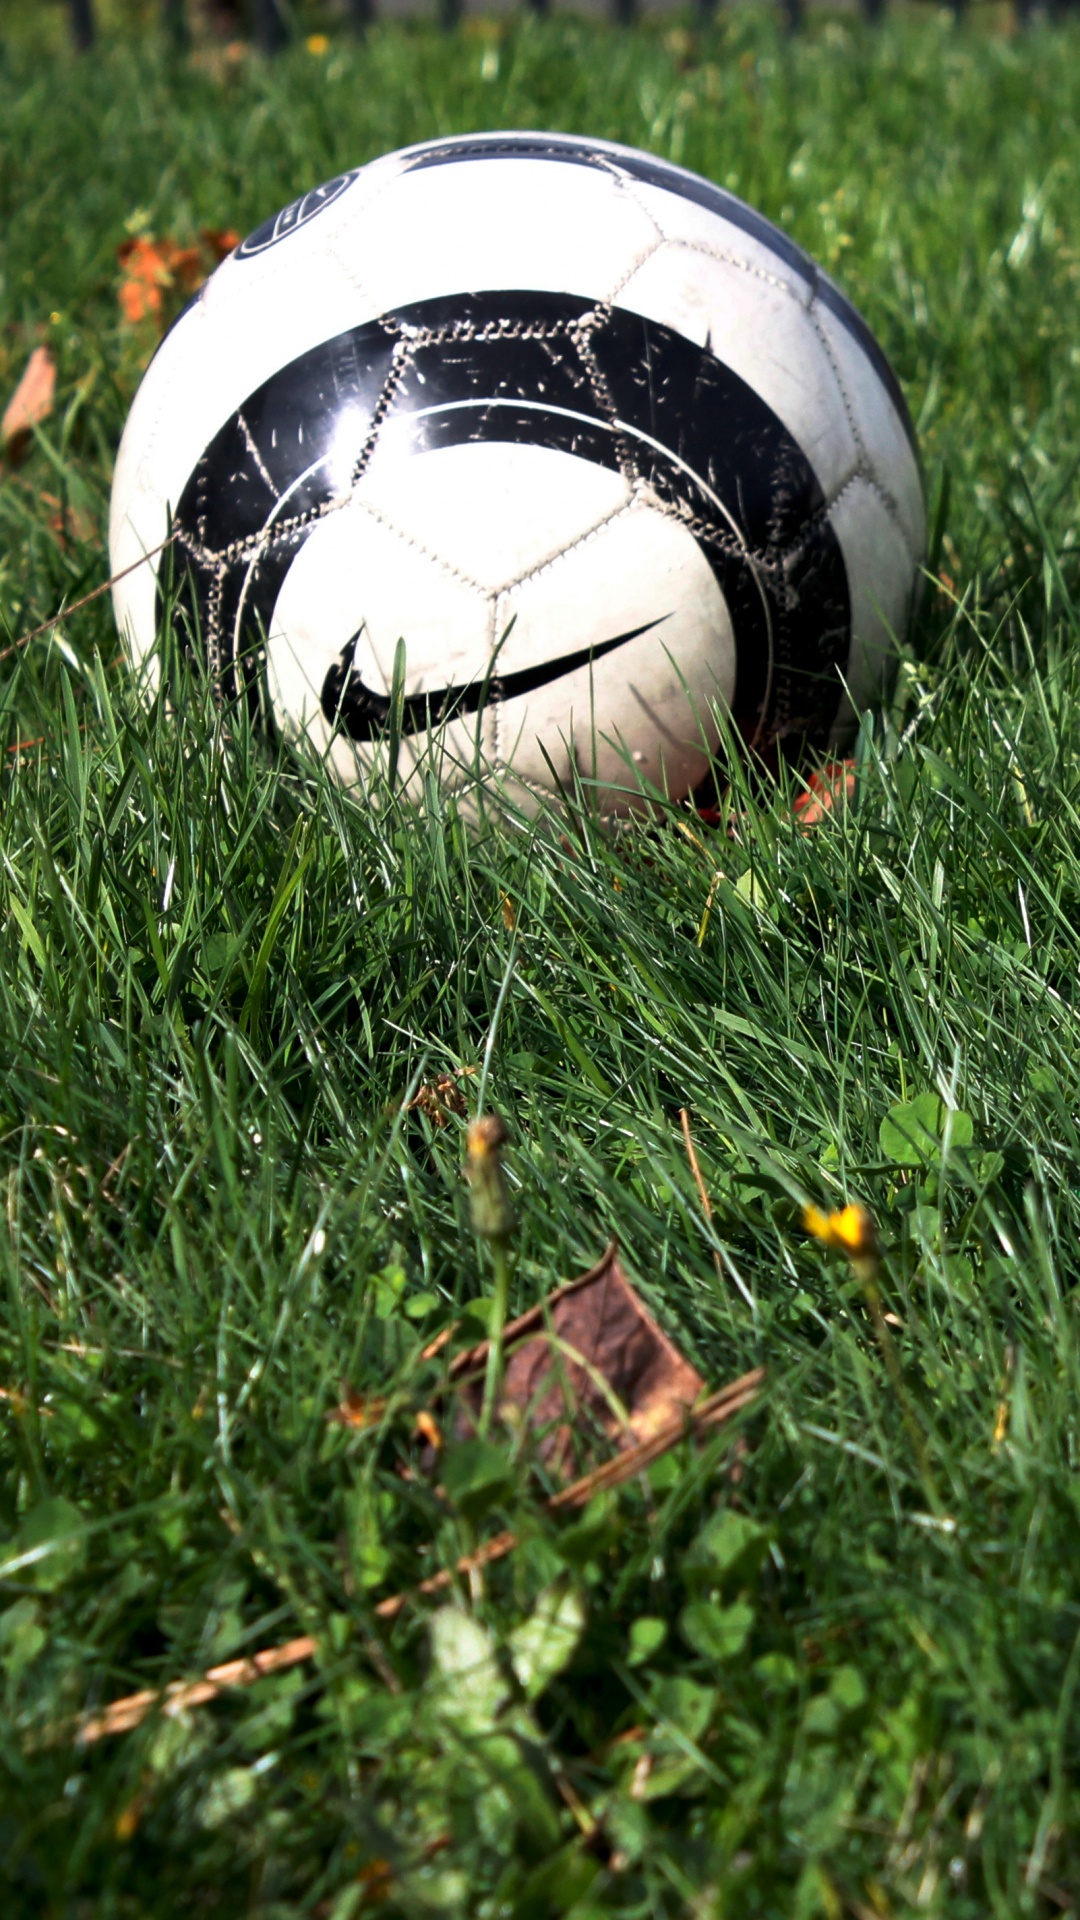 球, 体育设备, 足球, 草, 草坪 壁纸 1080x1920 允许